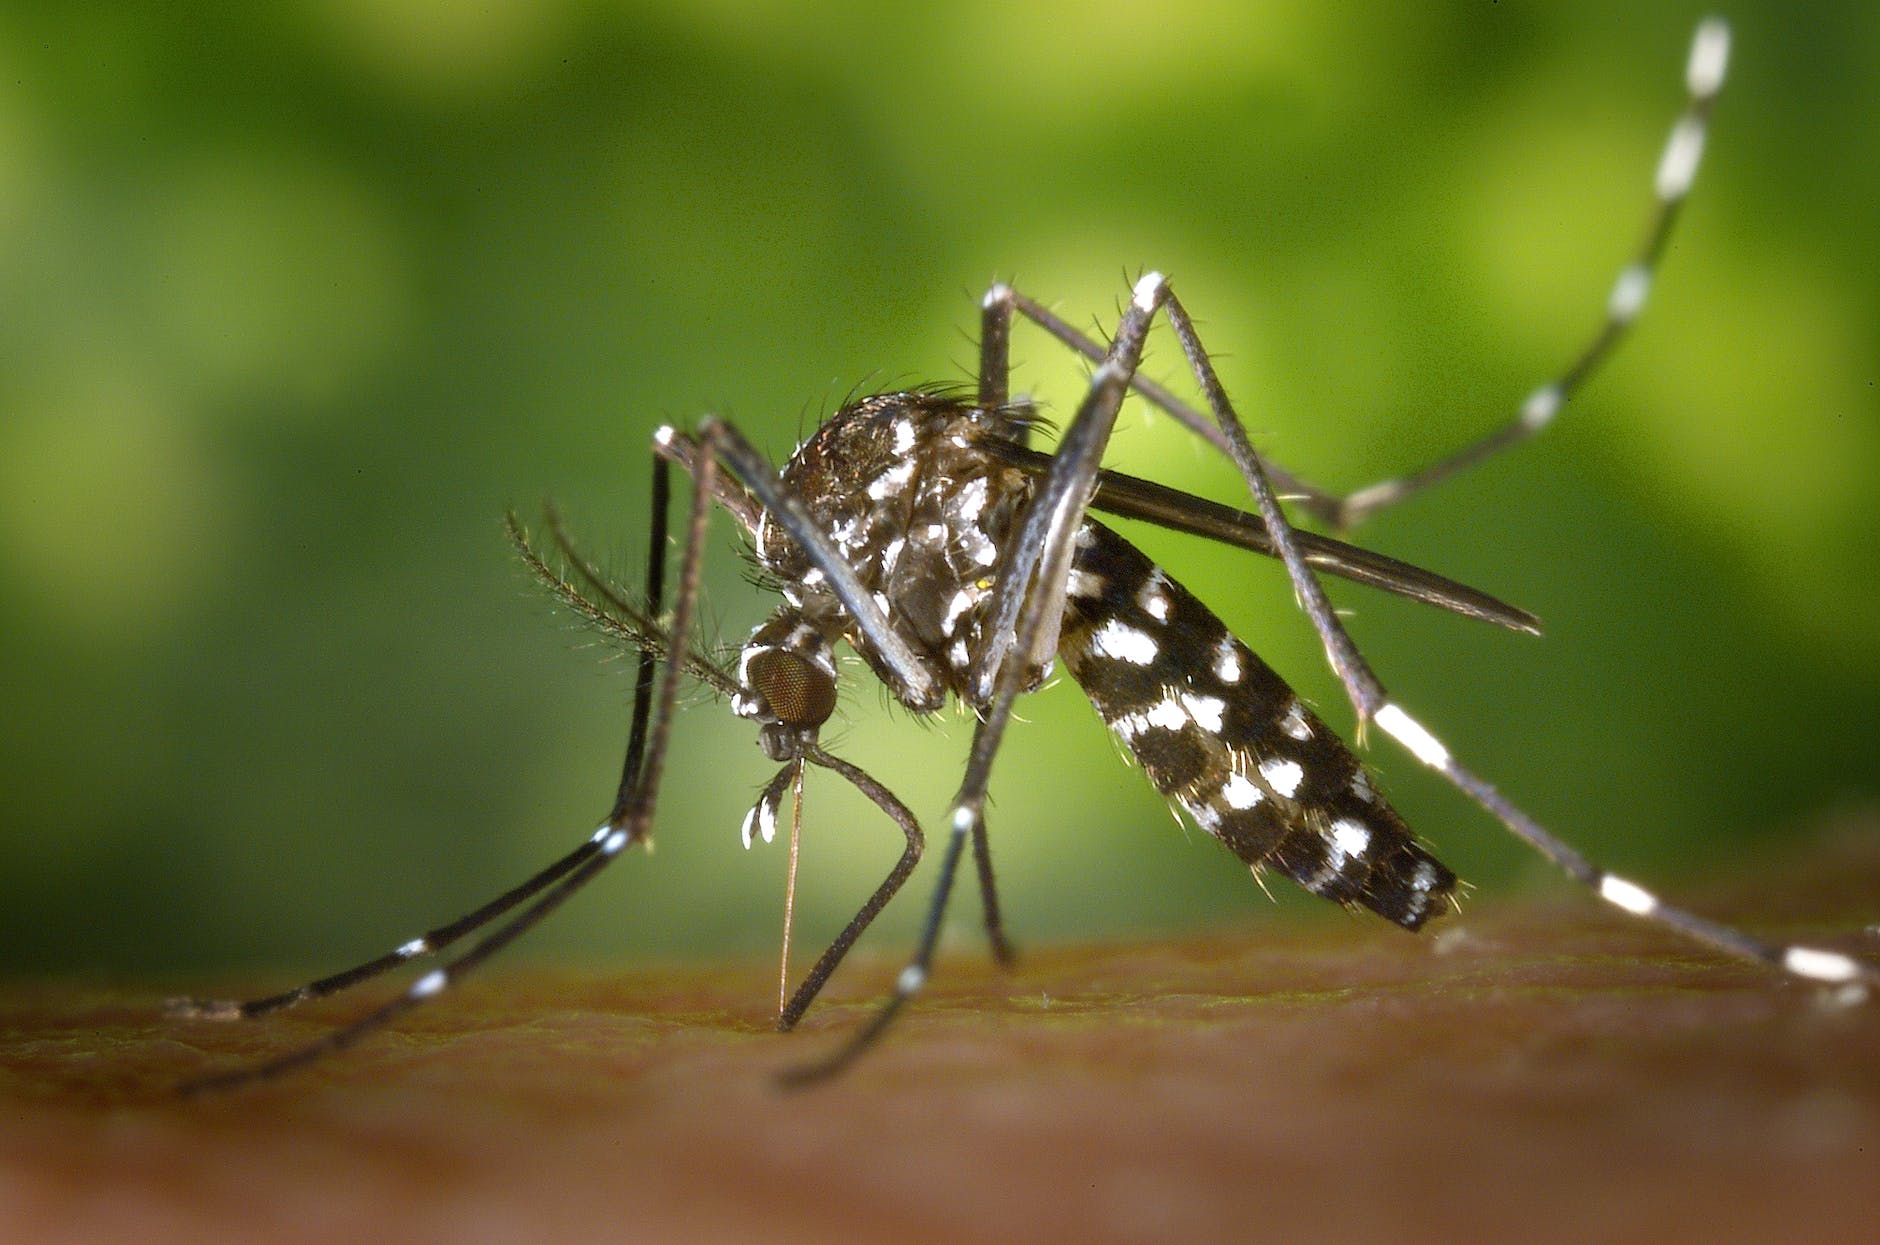 क्या मानसून के बाद बढ़ेगा मलेरिया का प्रकोप ? जानिए मौसम के बदलते प्रभाव और मलेरिया के बारे में सबकुछ